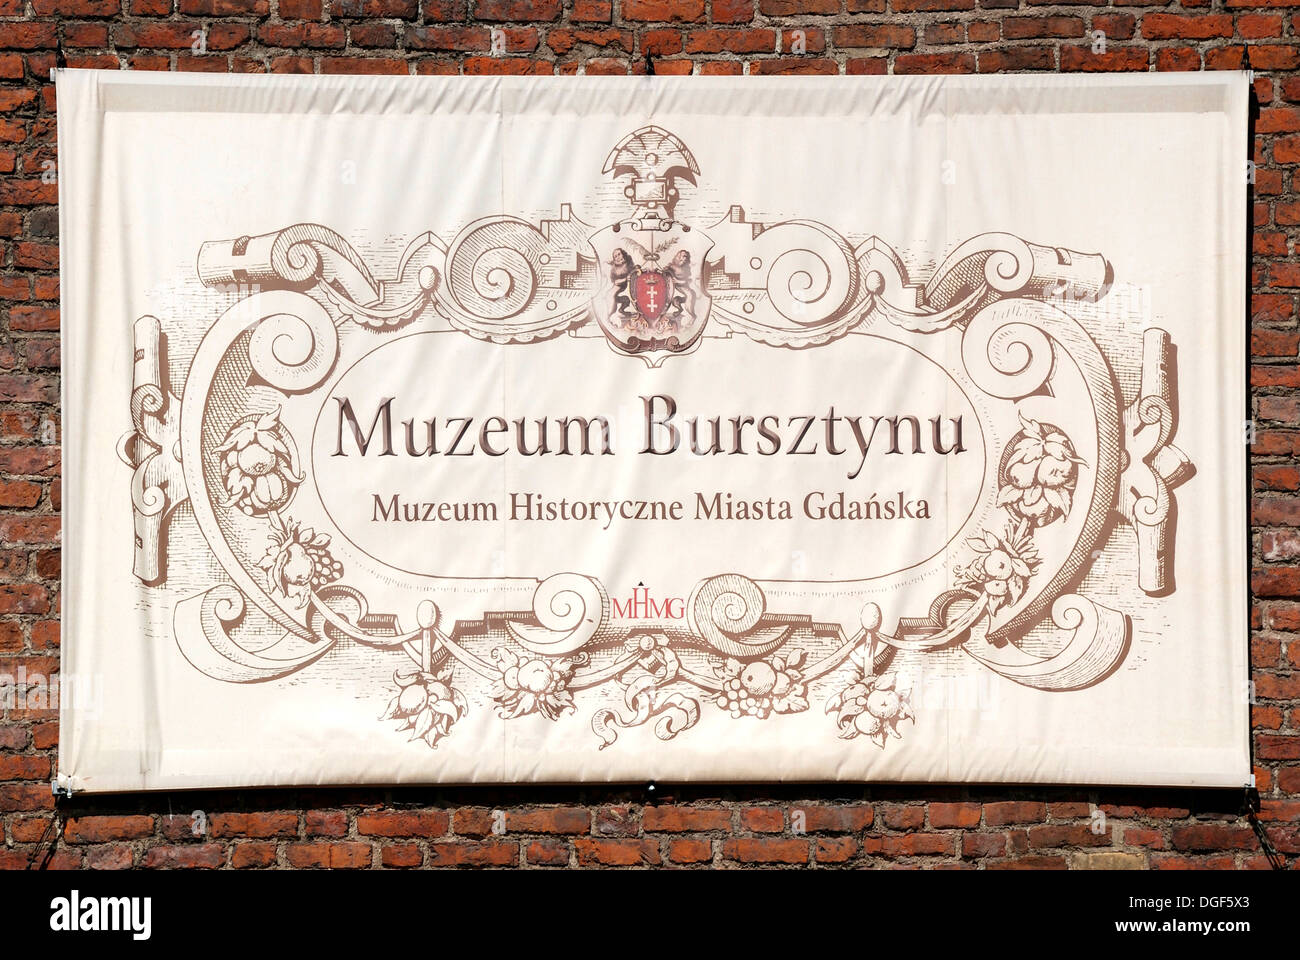 Museo de Ámbar de Gdansk - Muzeum Bursztynu. Foto de stock